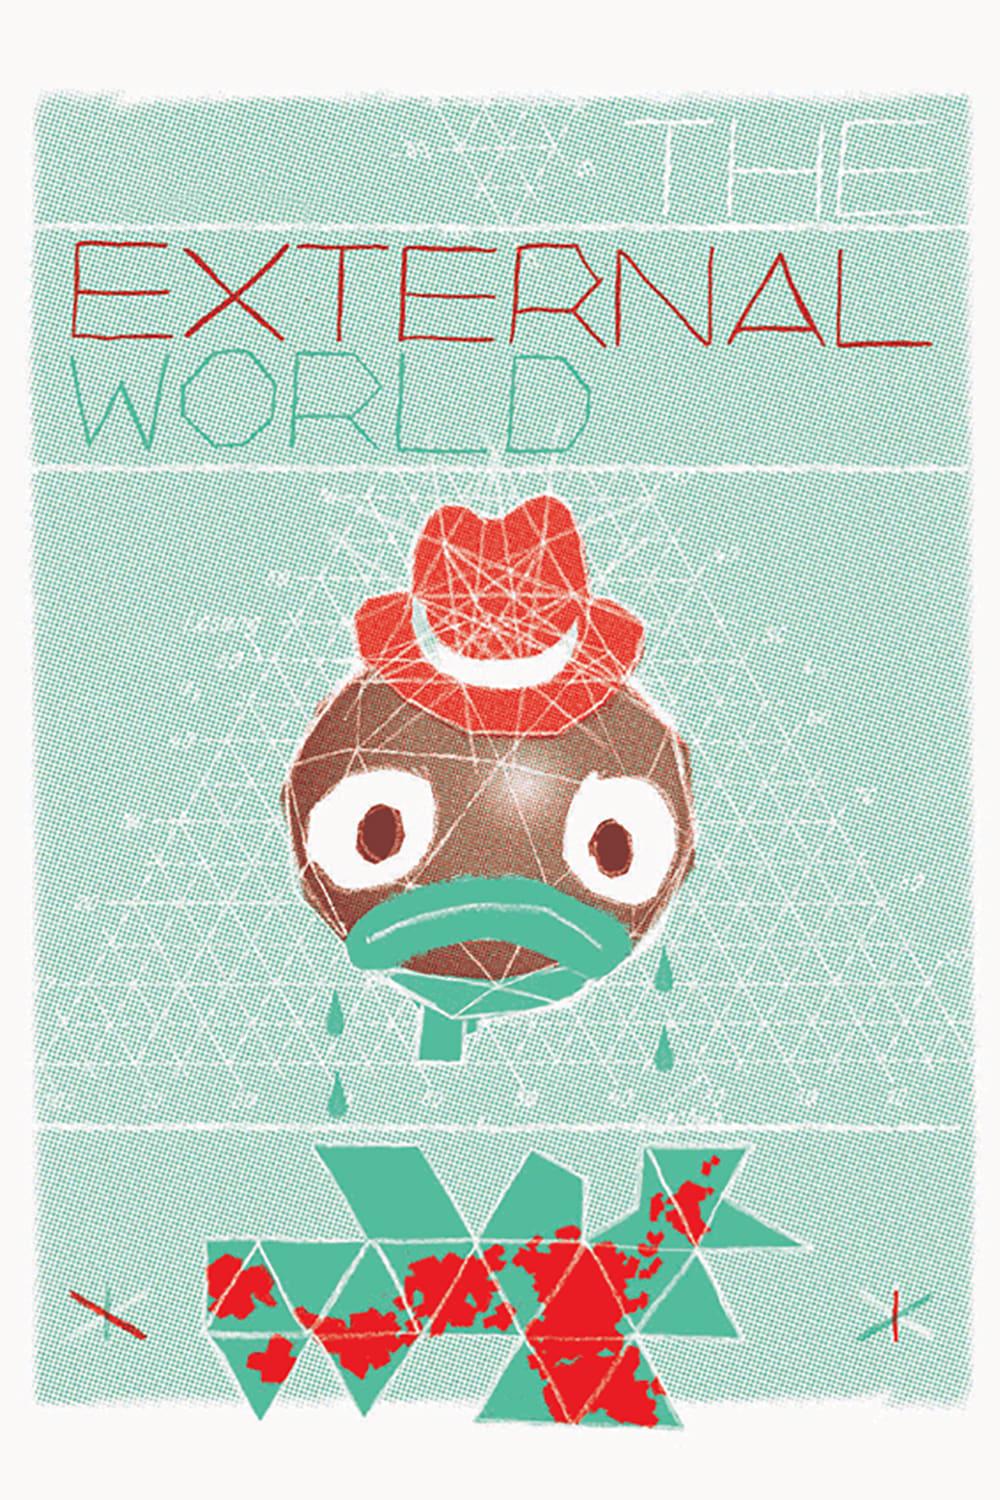 The External World poster